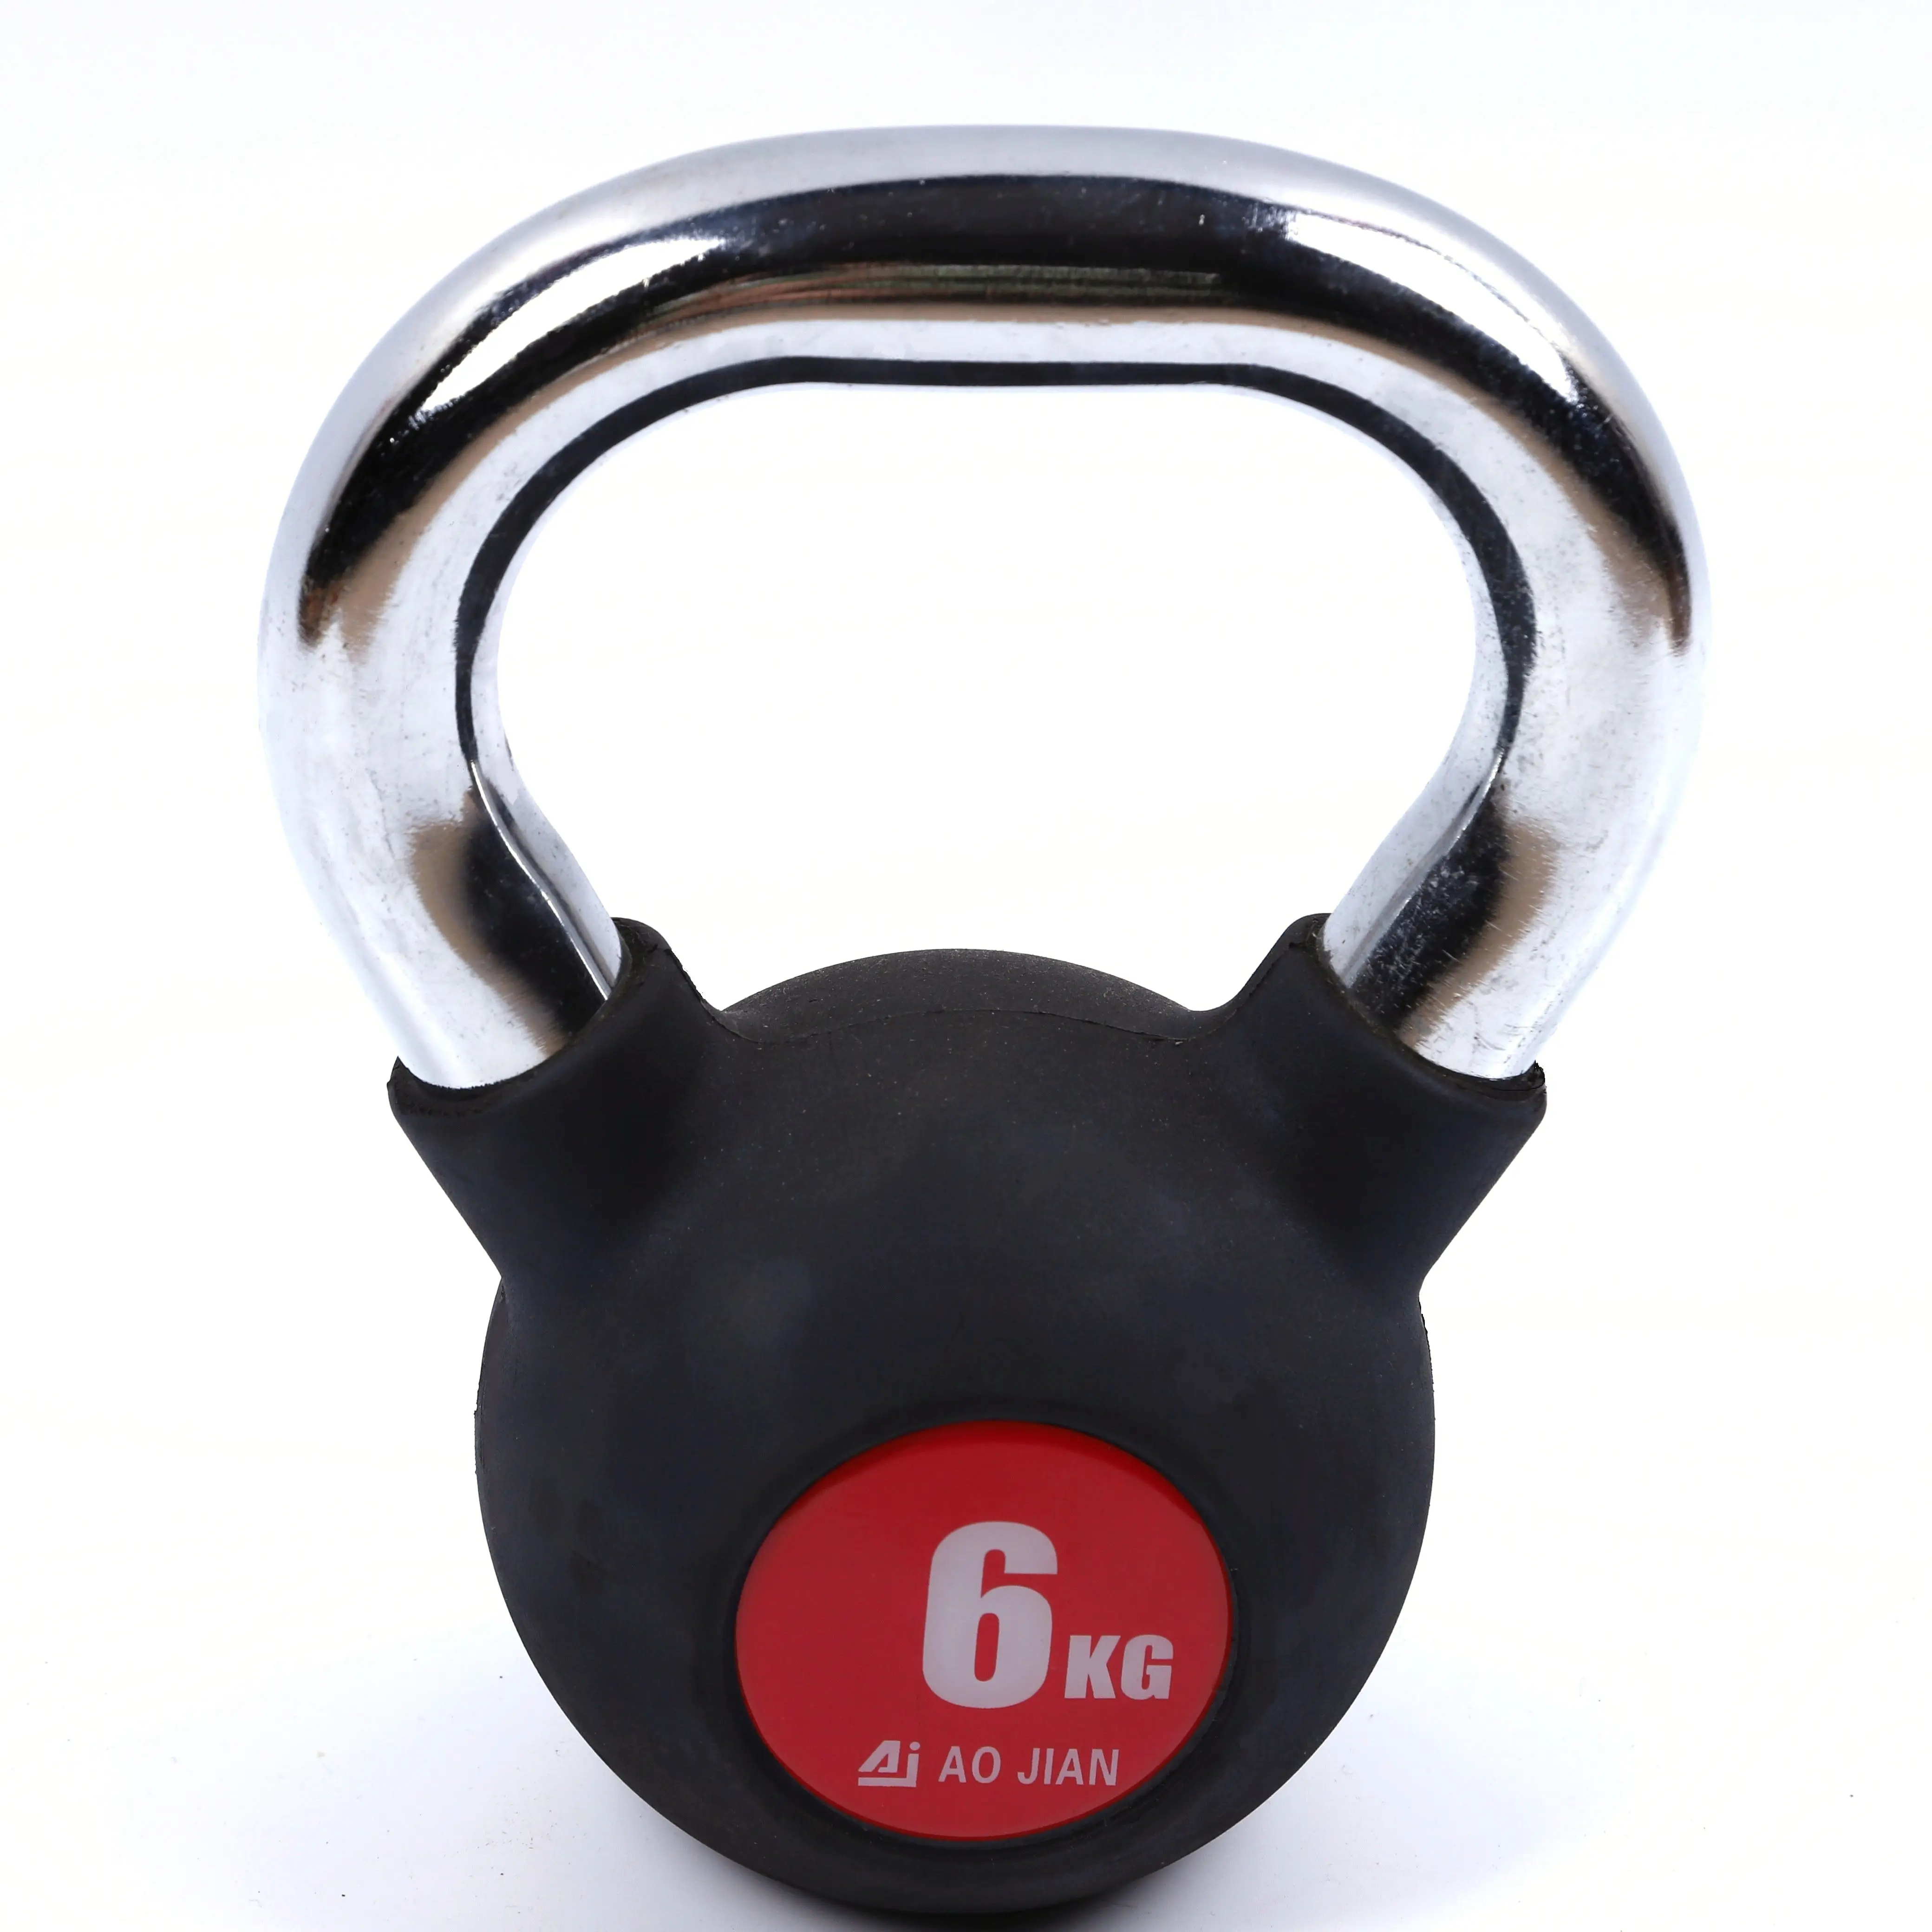 Vendita calda kettlebell rivestito in gomma 4-32kg pesi campana bollitore, nero-attrezzatura per l'allenamento della forza Premium